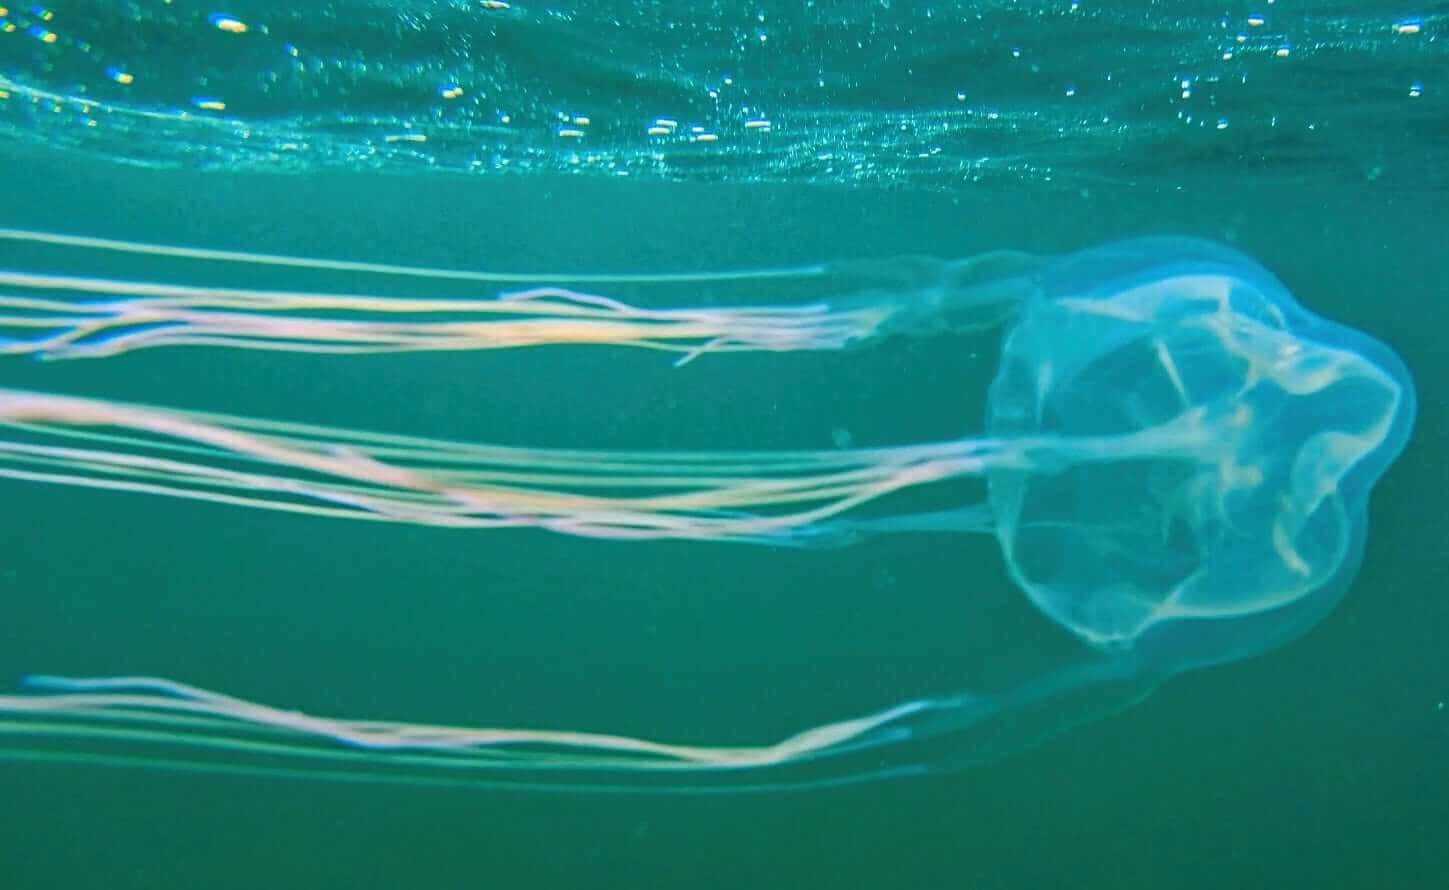 Box Jellyfish Underwater View.jpg Wallpaper